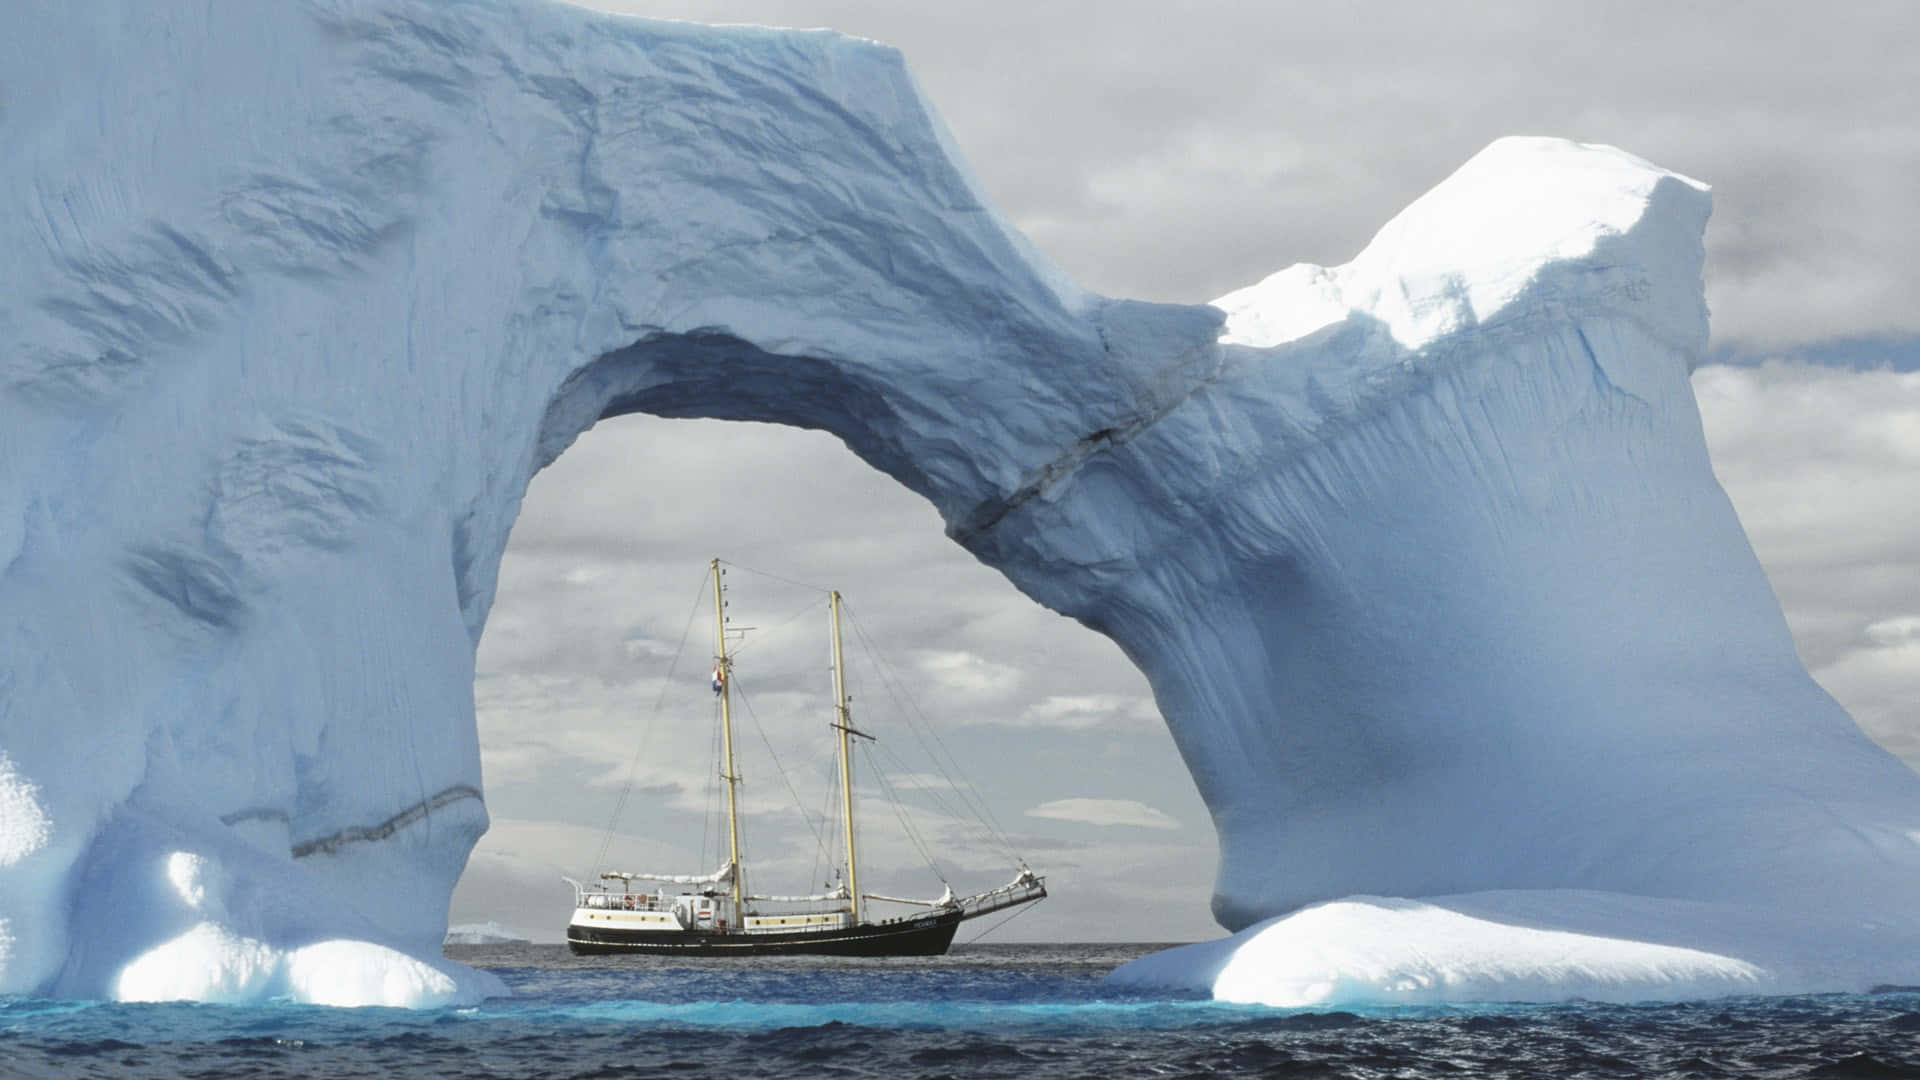 "Seas of White in Antarctica"